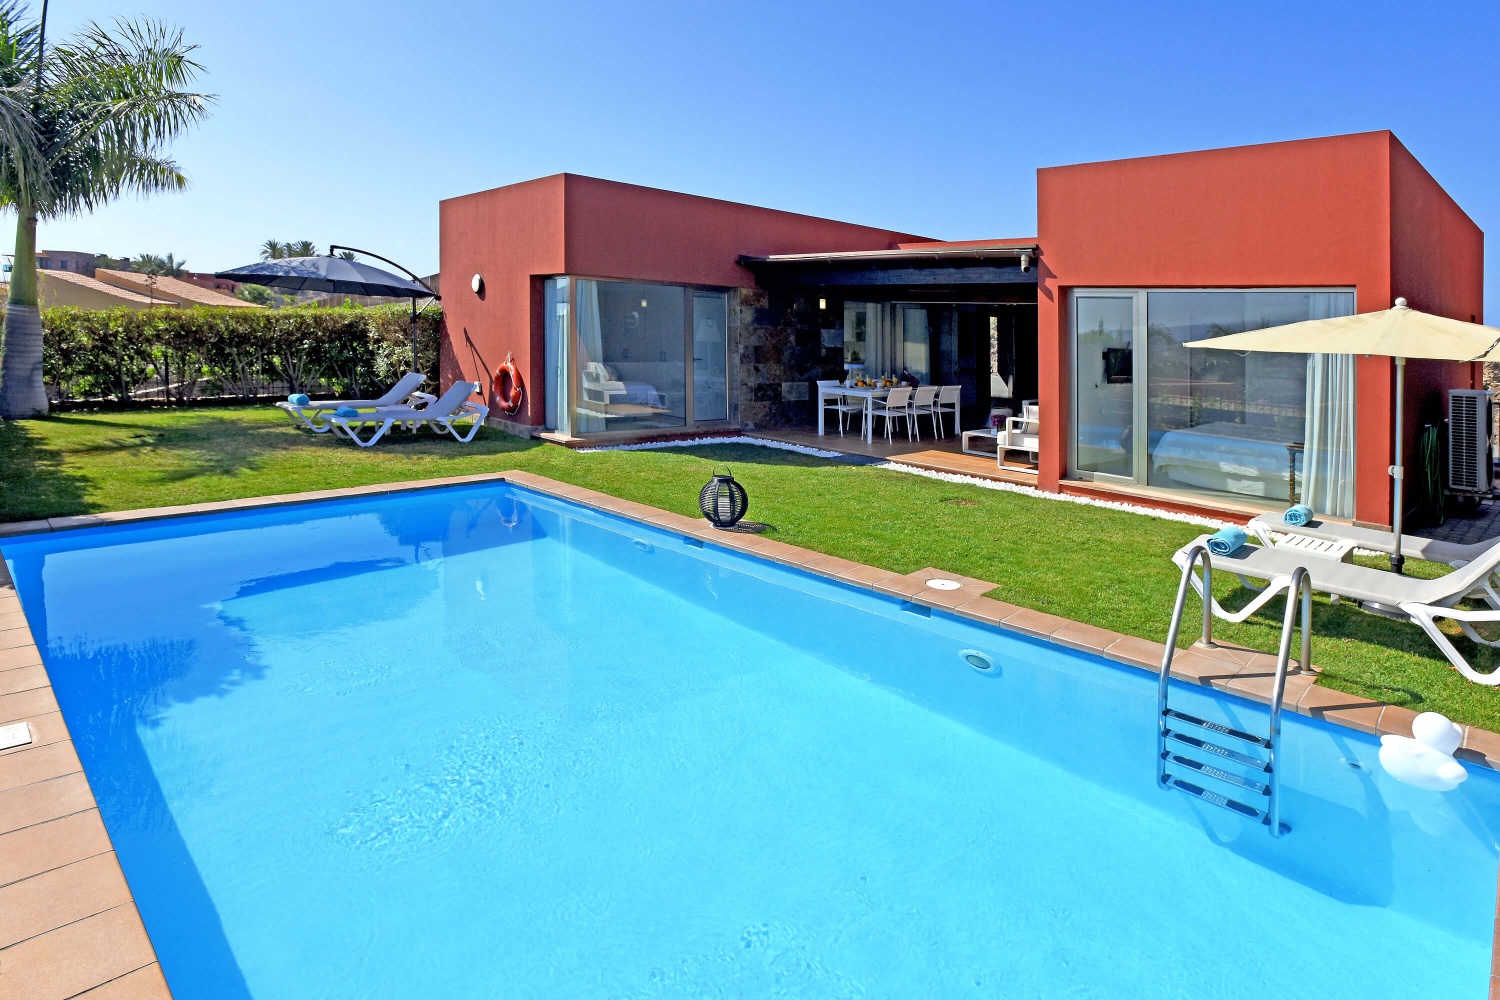 Bungalow completamente nuovo e modernamente arredato con bella terrazza esterna, grande piscina e splendida vista sul campo da golf e sul paesaggio